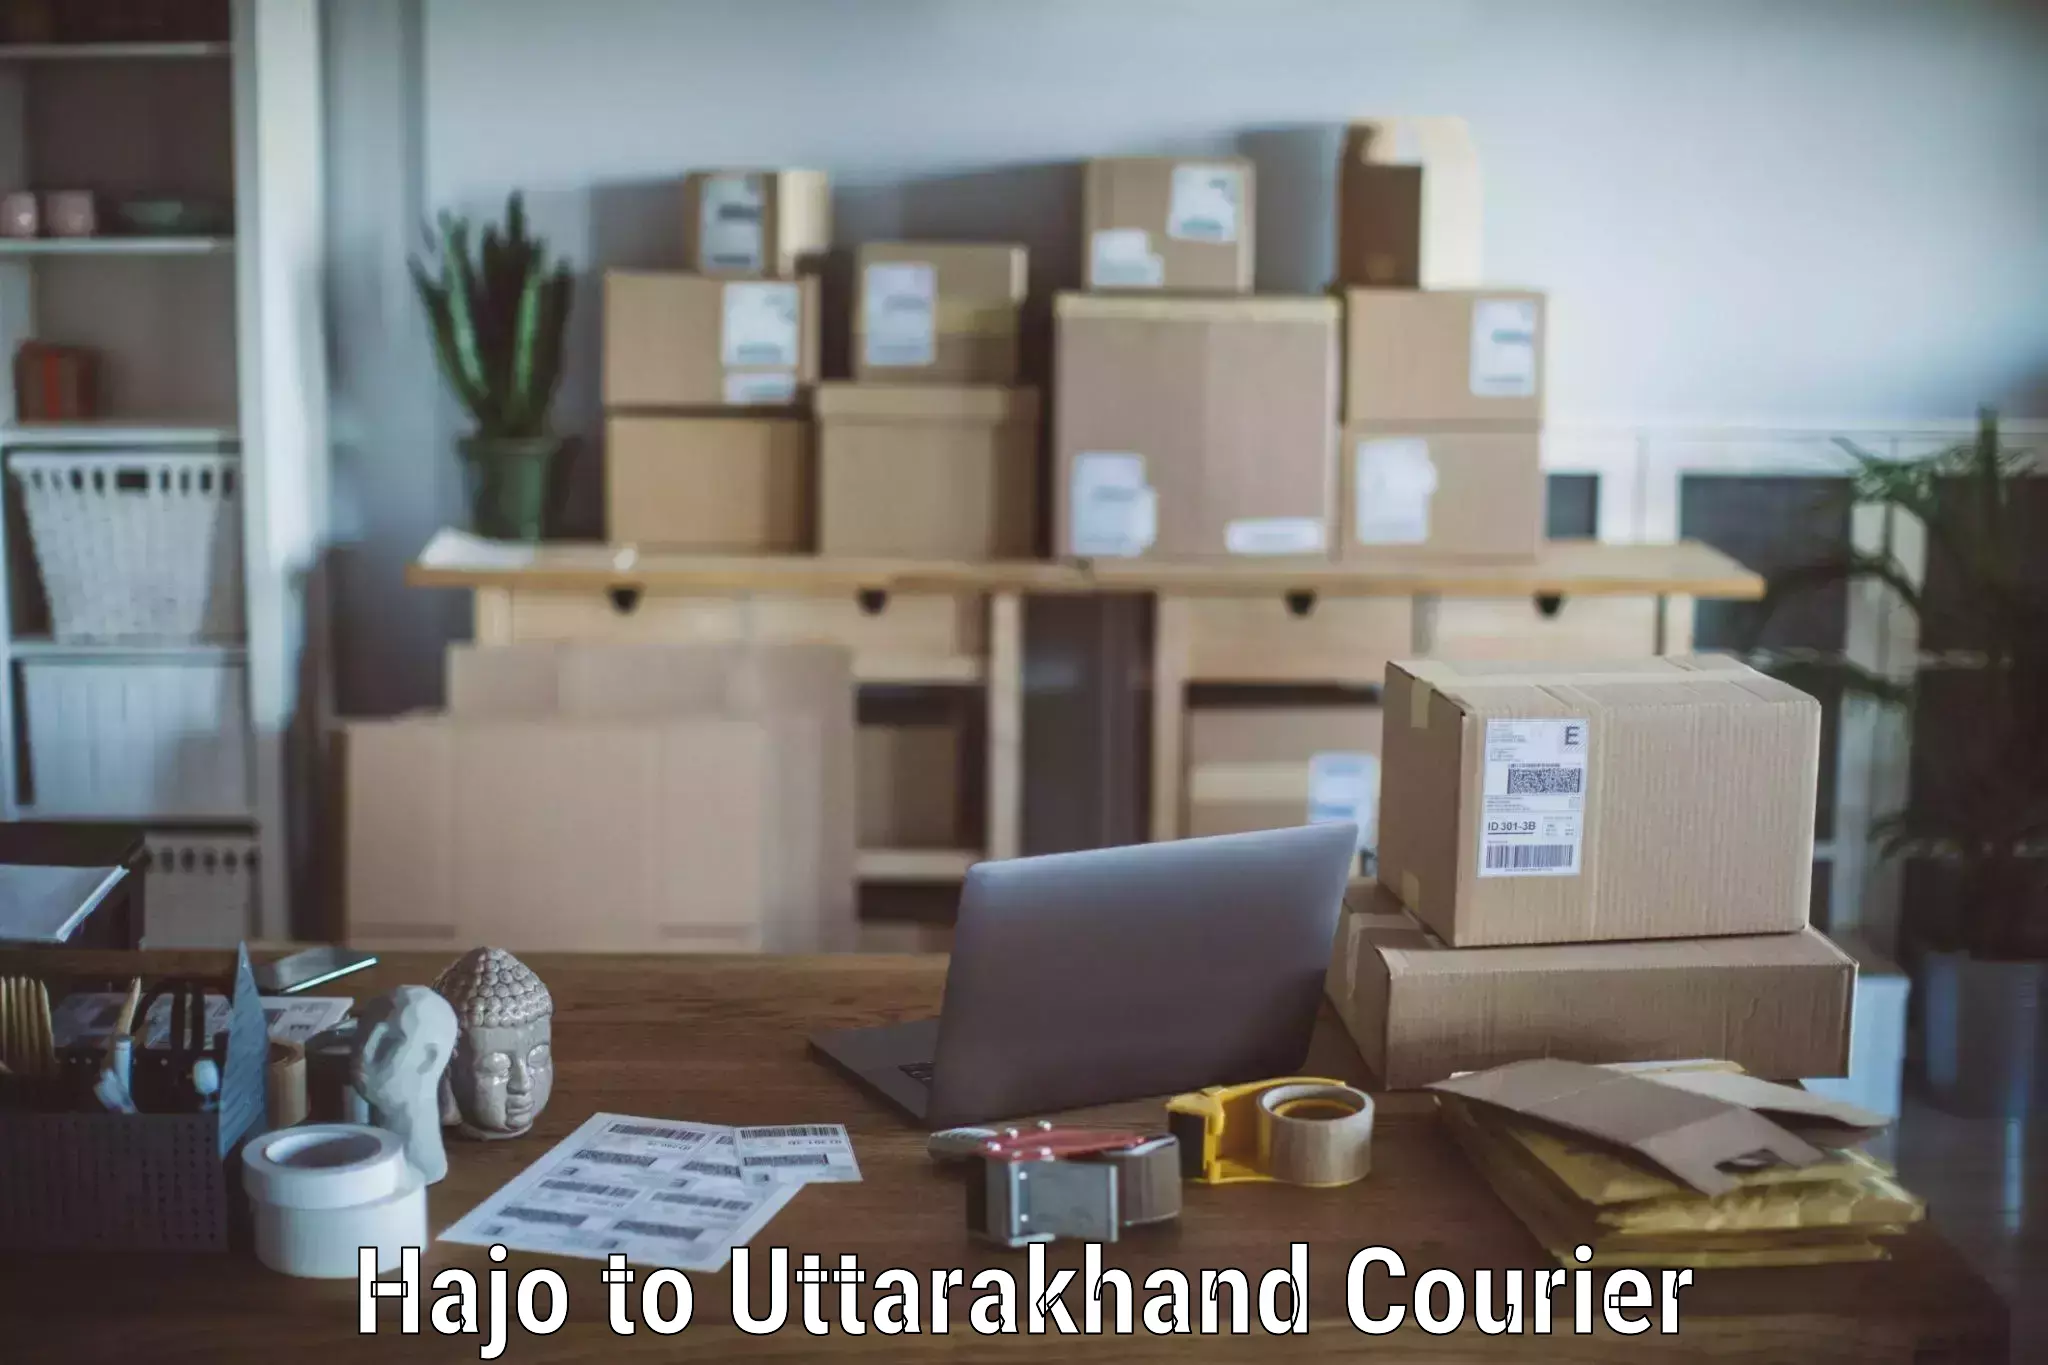 Professional moving company Hajo to Haridwar